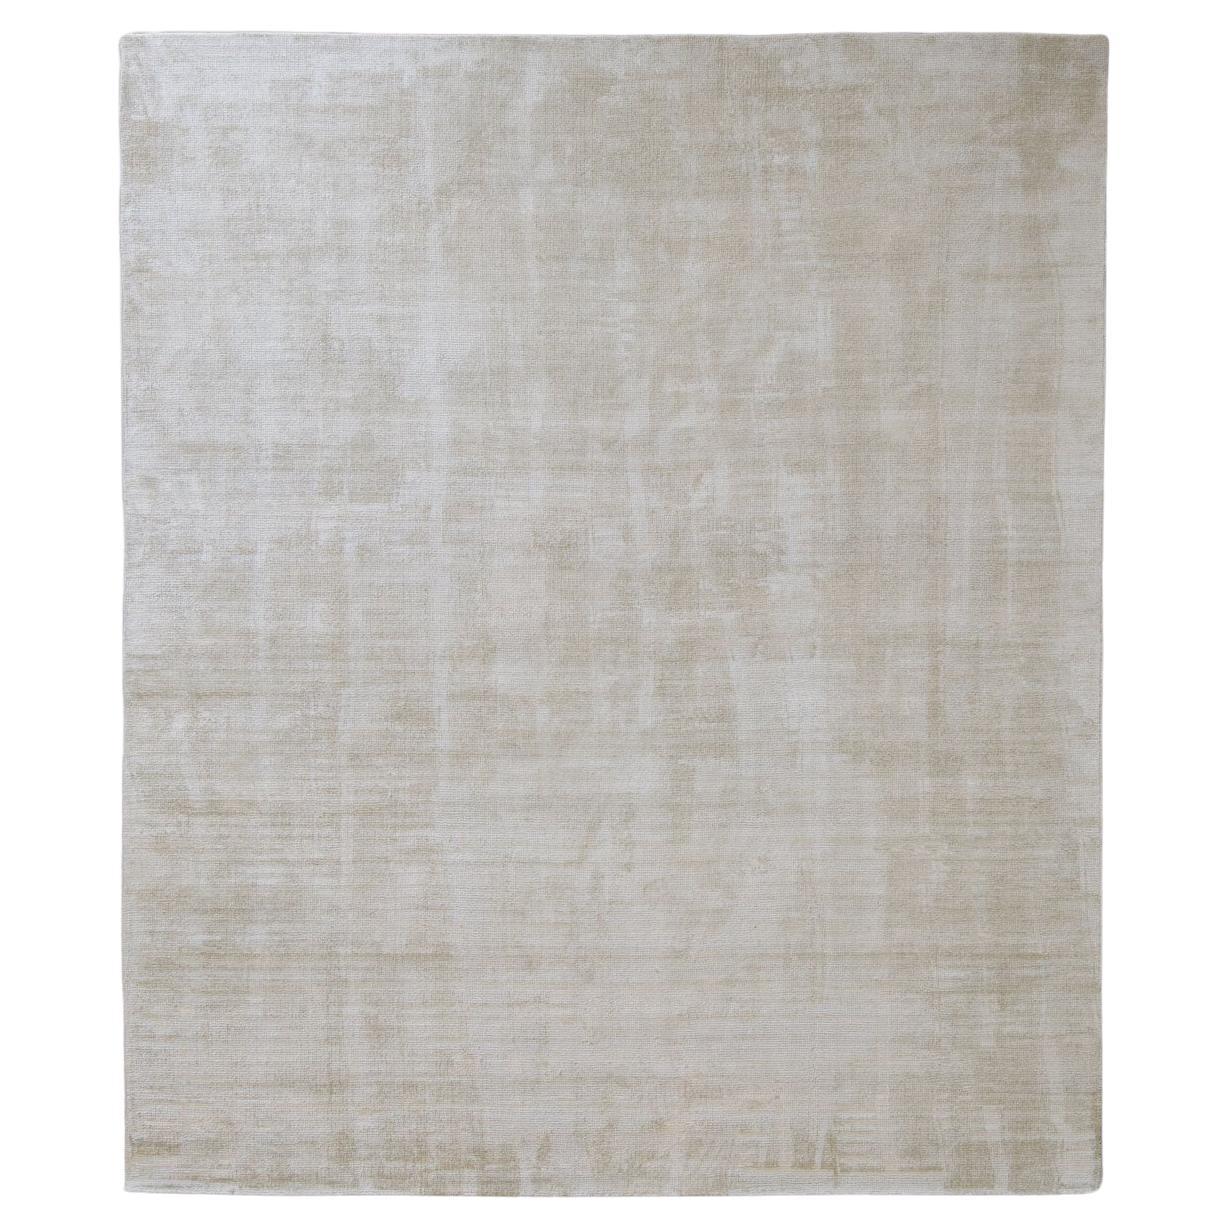 Iconico Tappeto di Design In-Canto Bianco Caldo by Deanna Comellini 300x400 cm For Sale